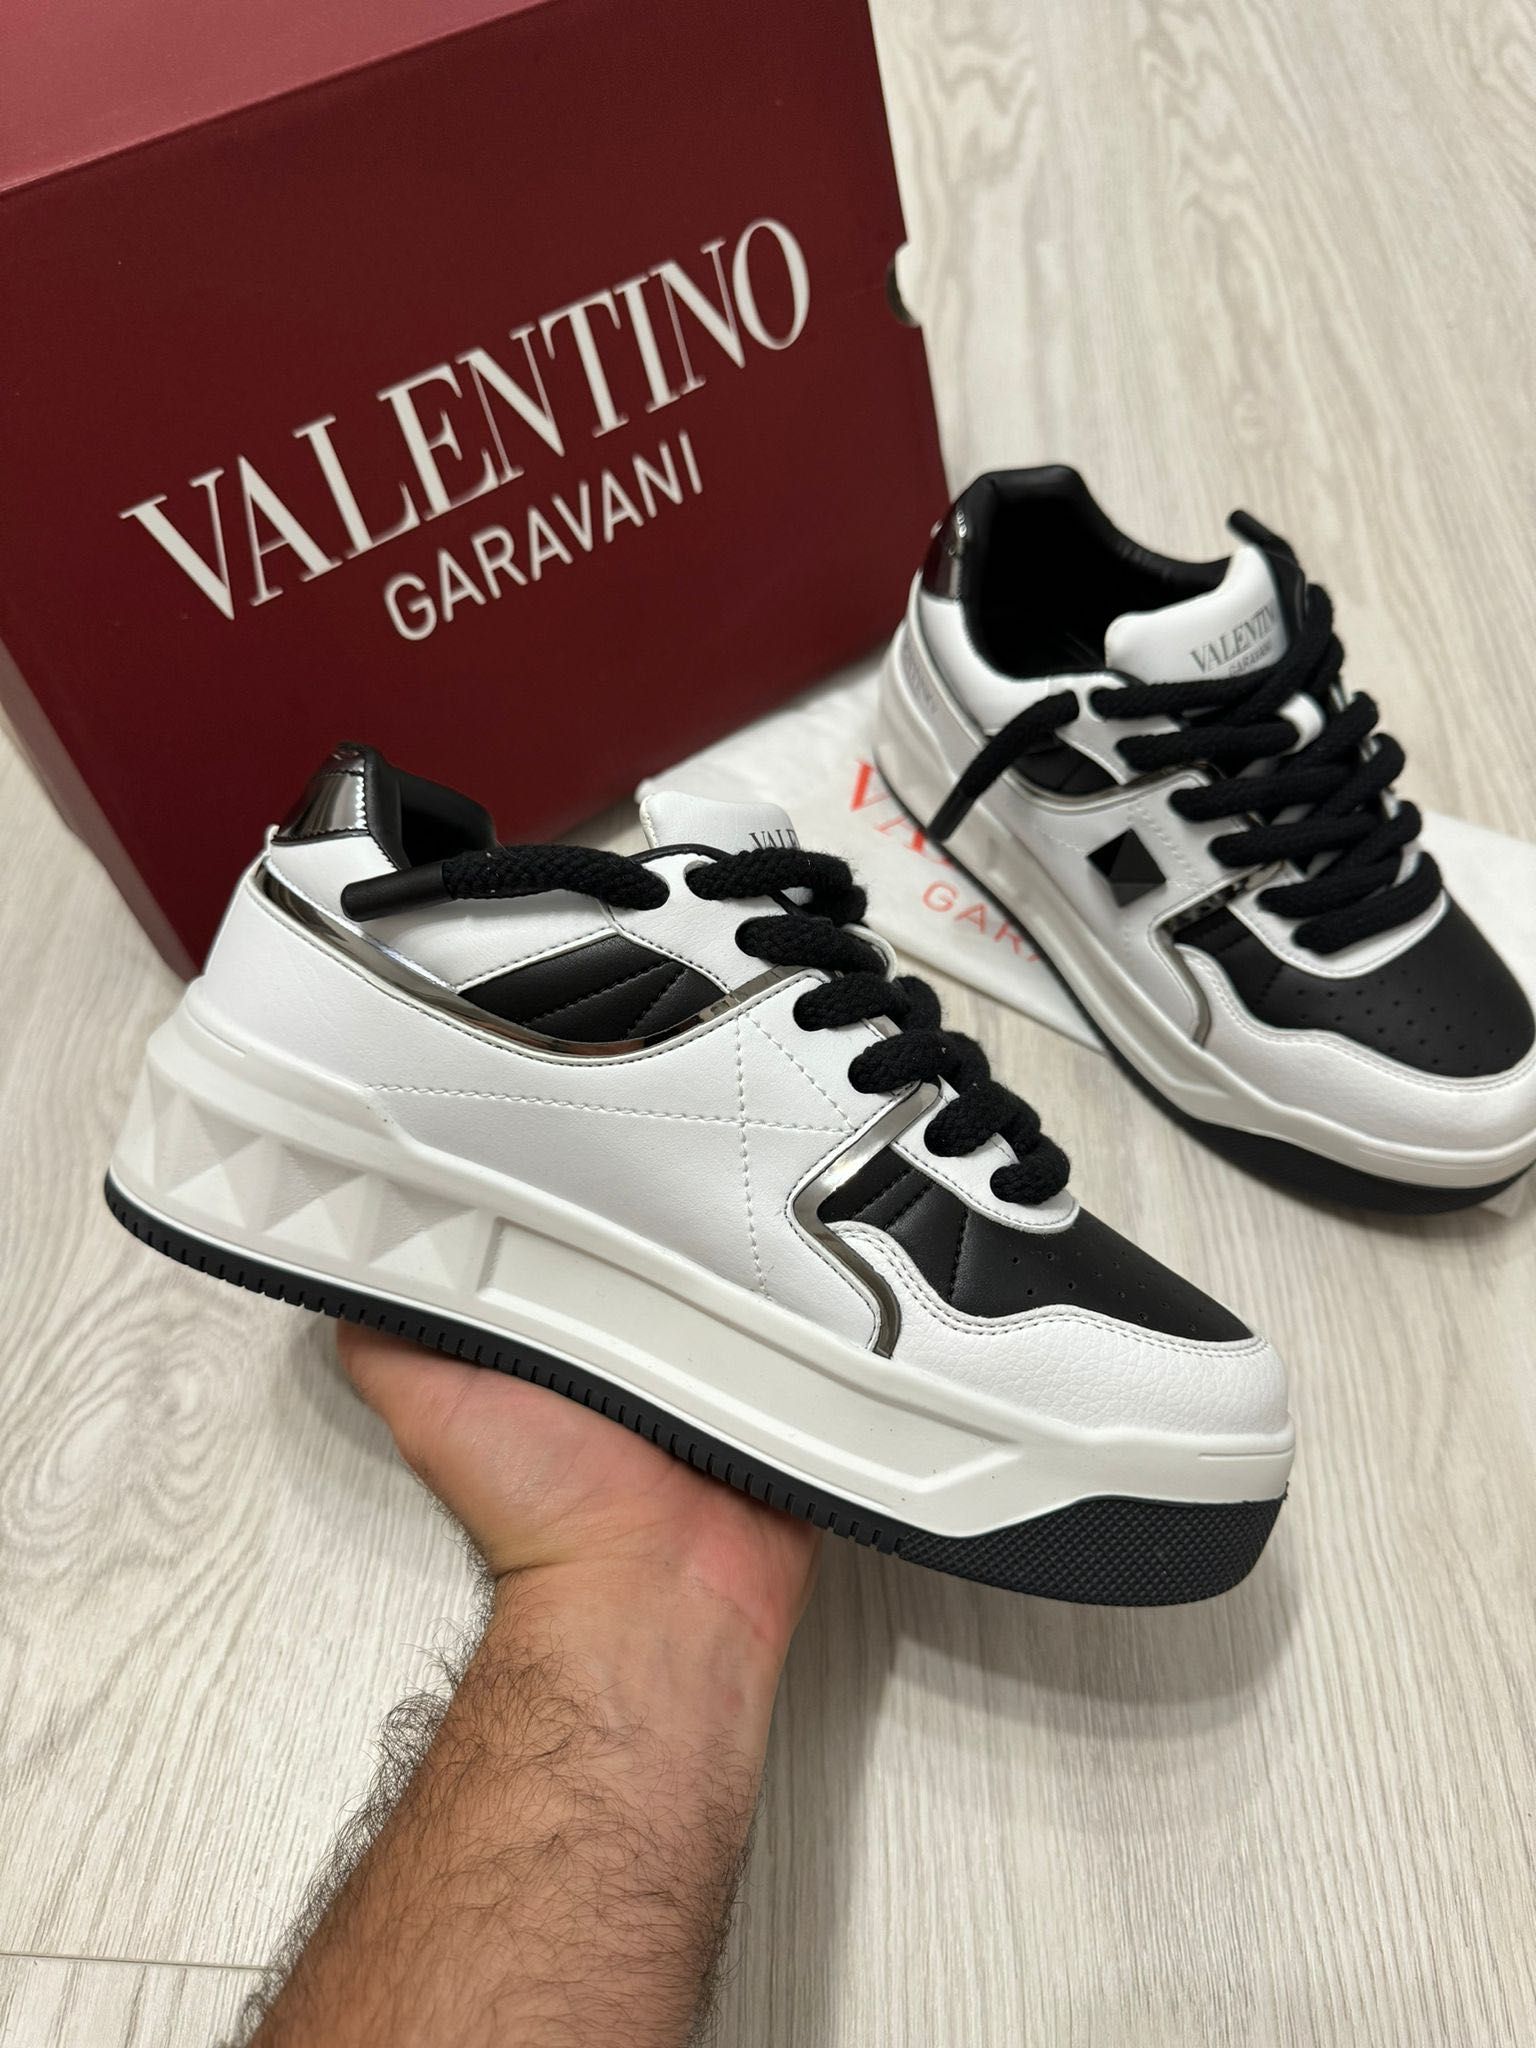 Adidasi Valentino black&white